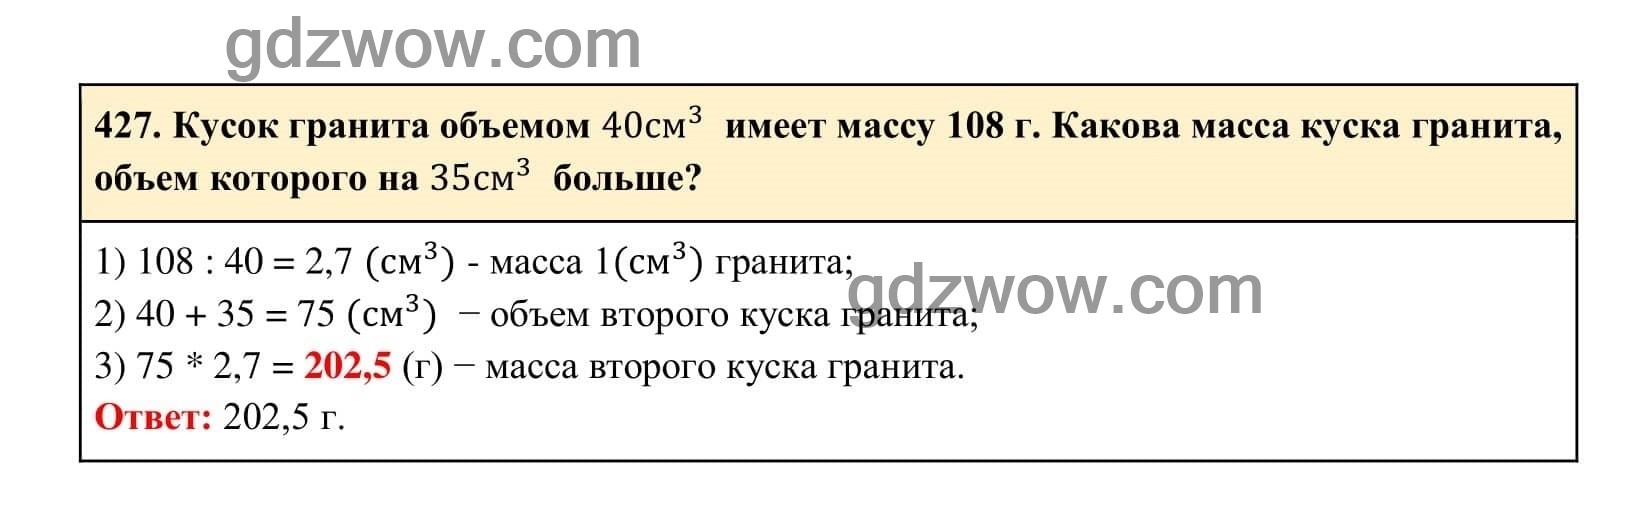 Упражнение 427 - ГДЗ по Алгебре 7 класс Учебник Макарычев (решебник) - GDZwow